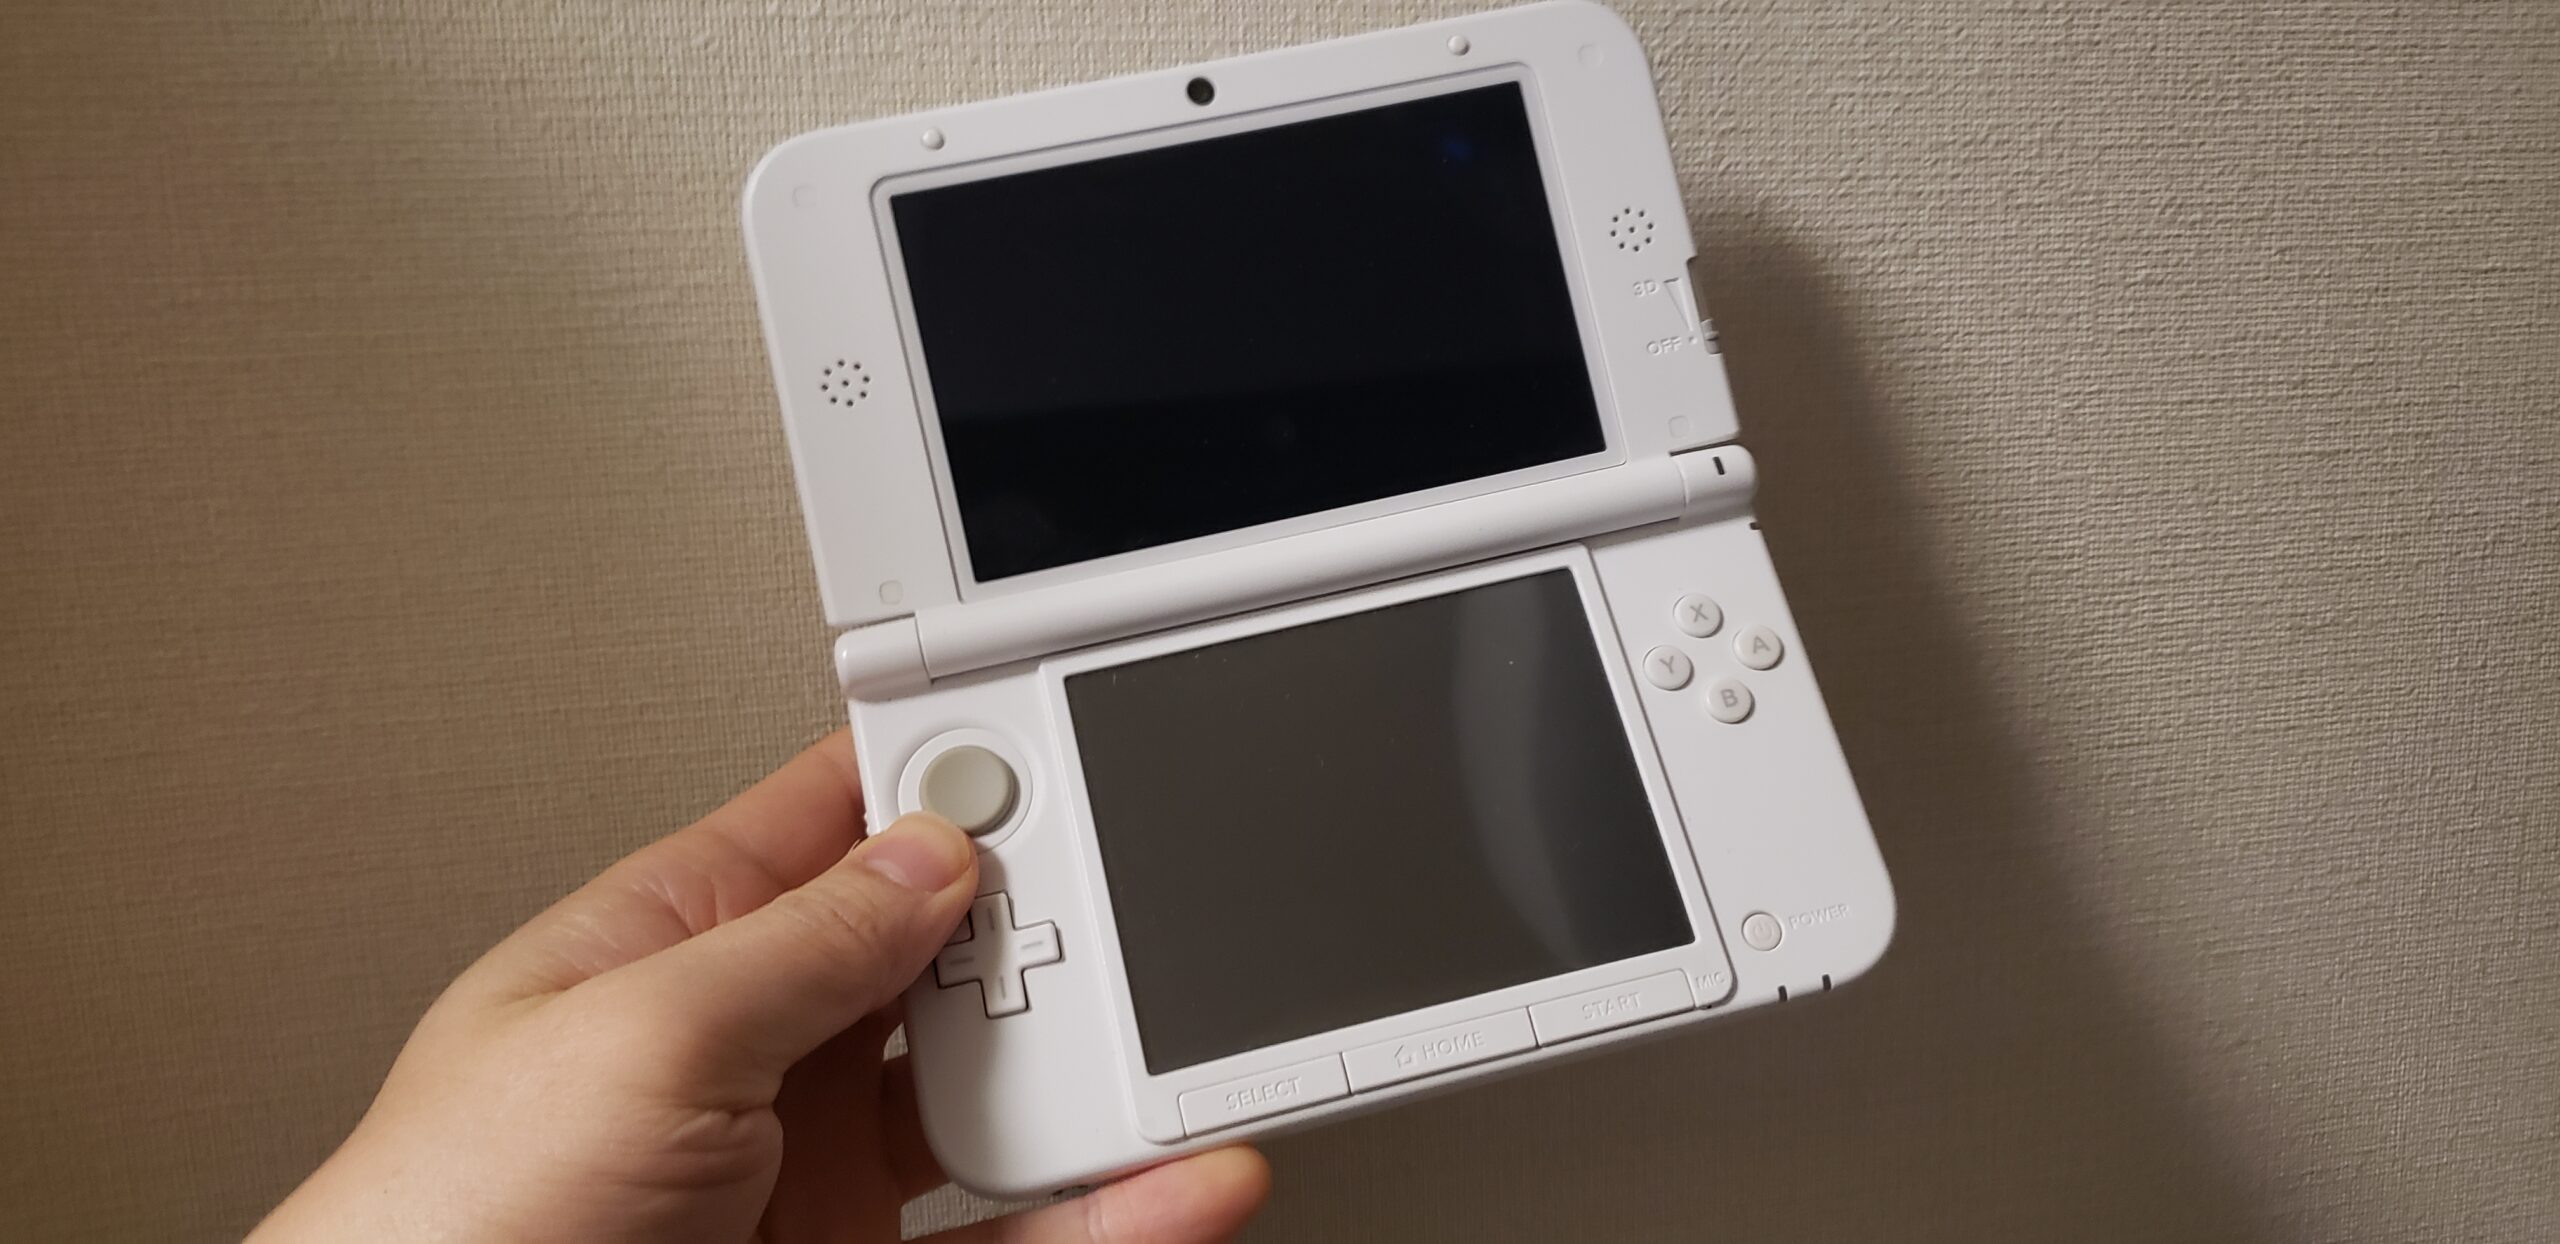 【おまけ付】 ニンテンドー 3DS 本体 & ソフト7本セット